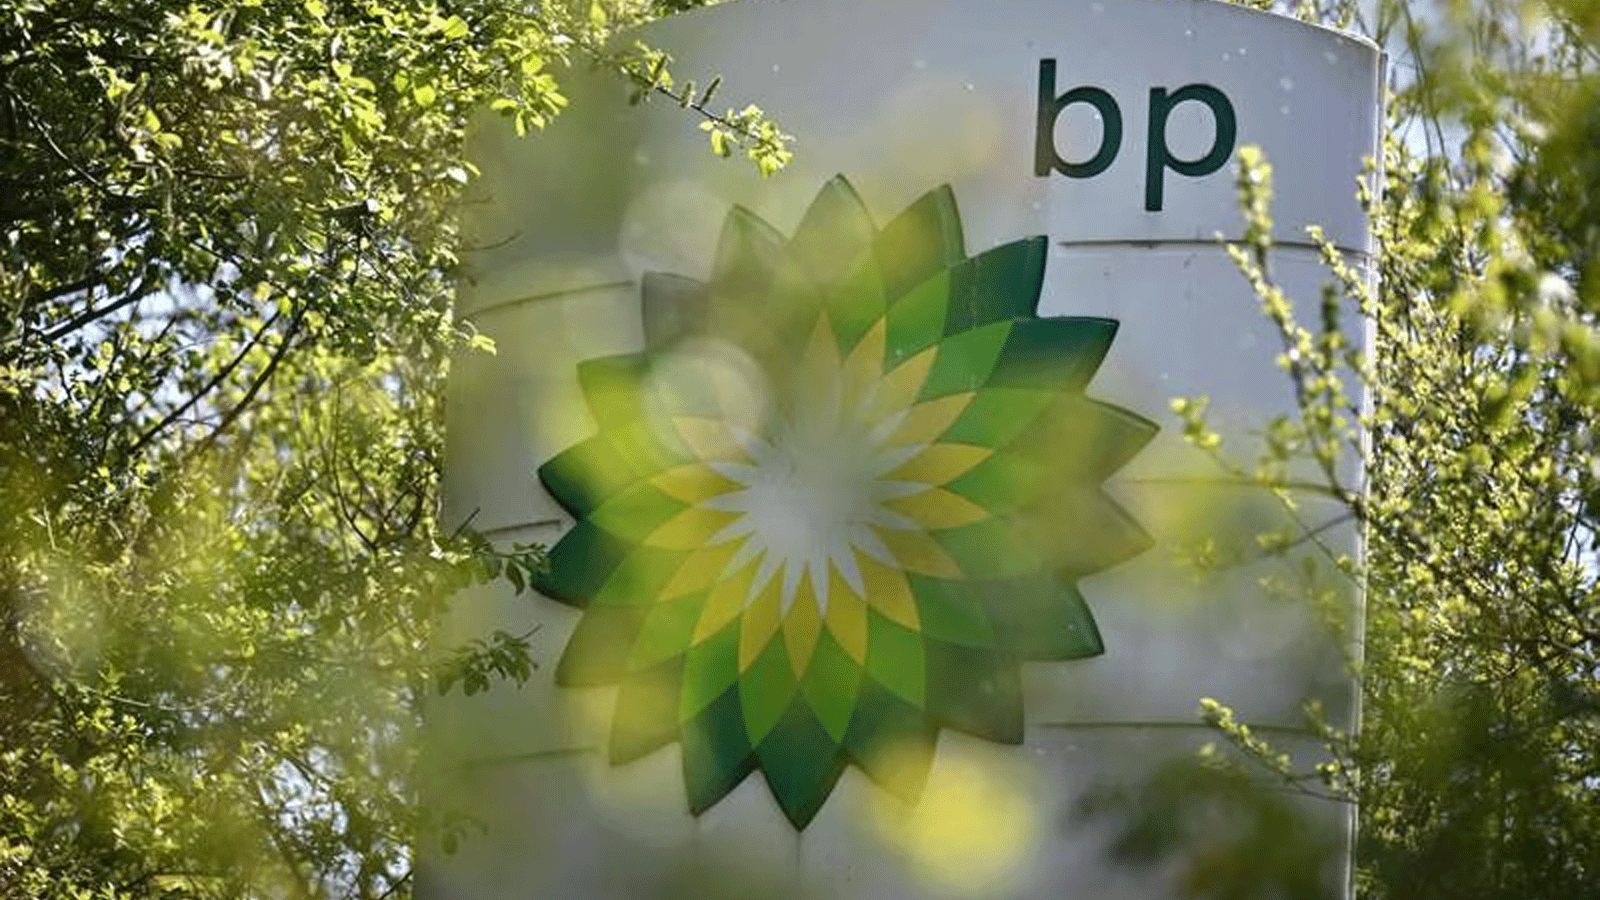 انسحبت شركة BP من حصتها في شركة النفط الروسية Rosneft بعد غزو أوكرانيا